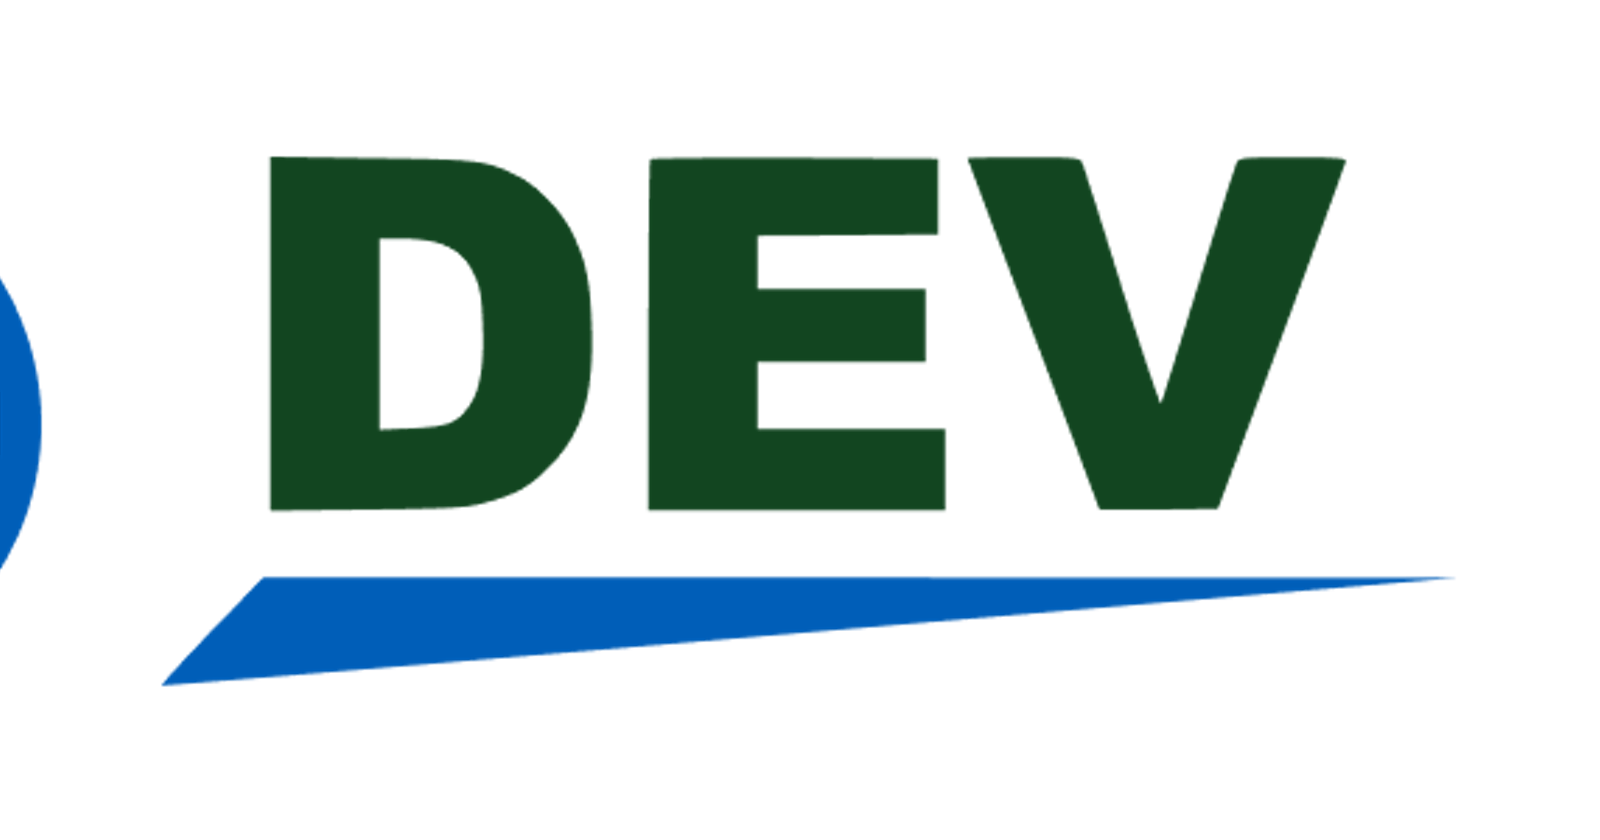 Vdev - A portfolio and resume generator